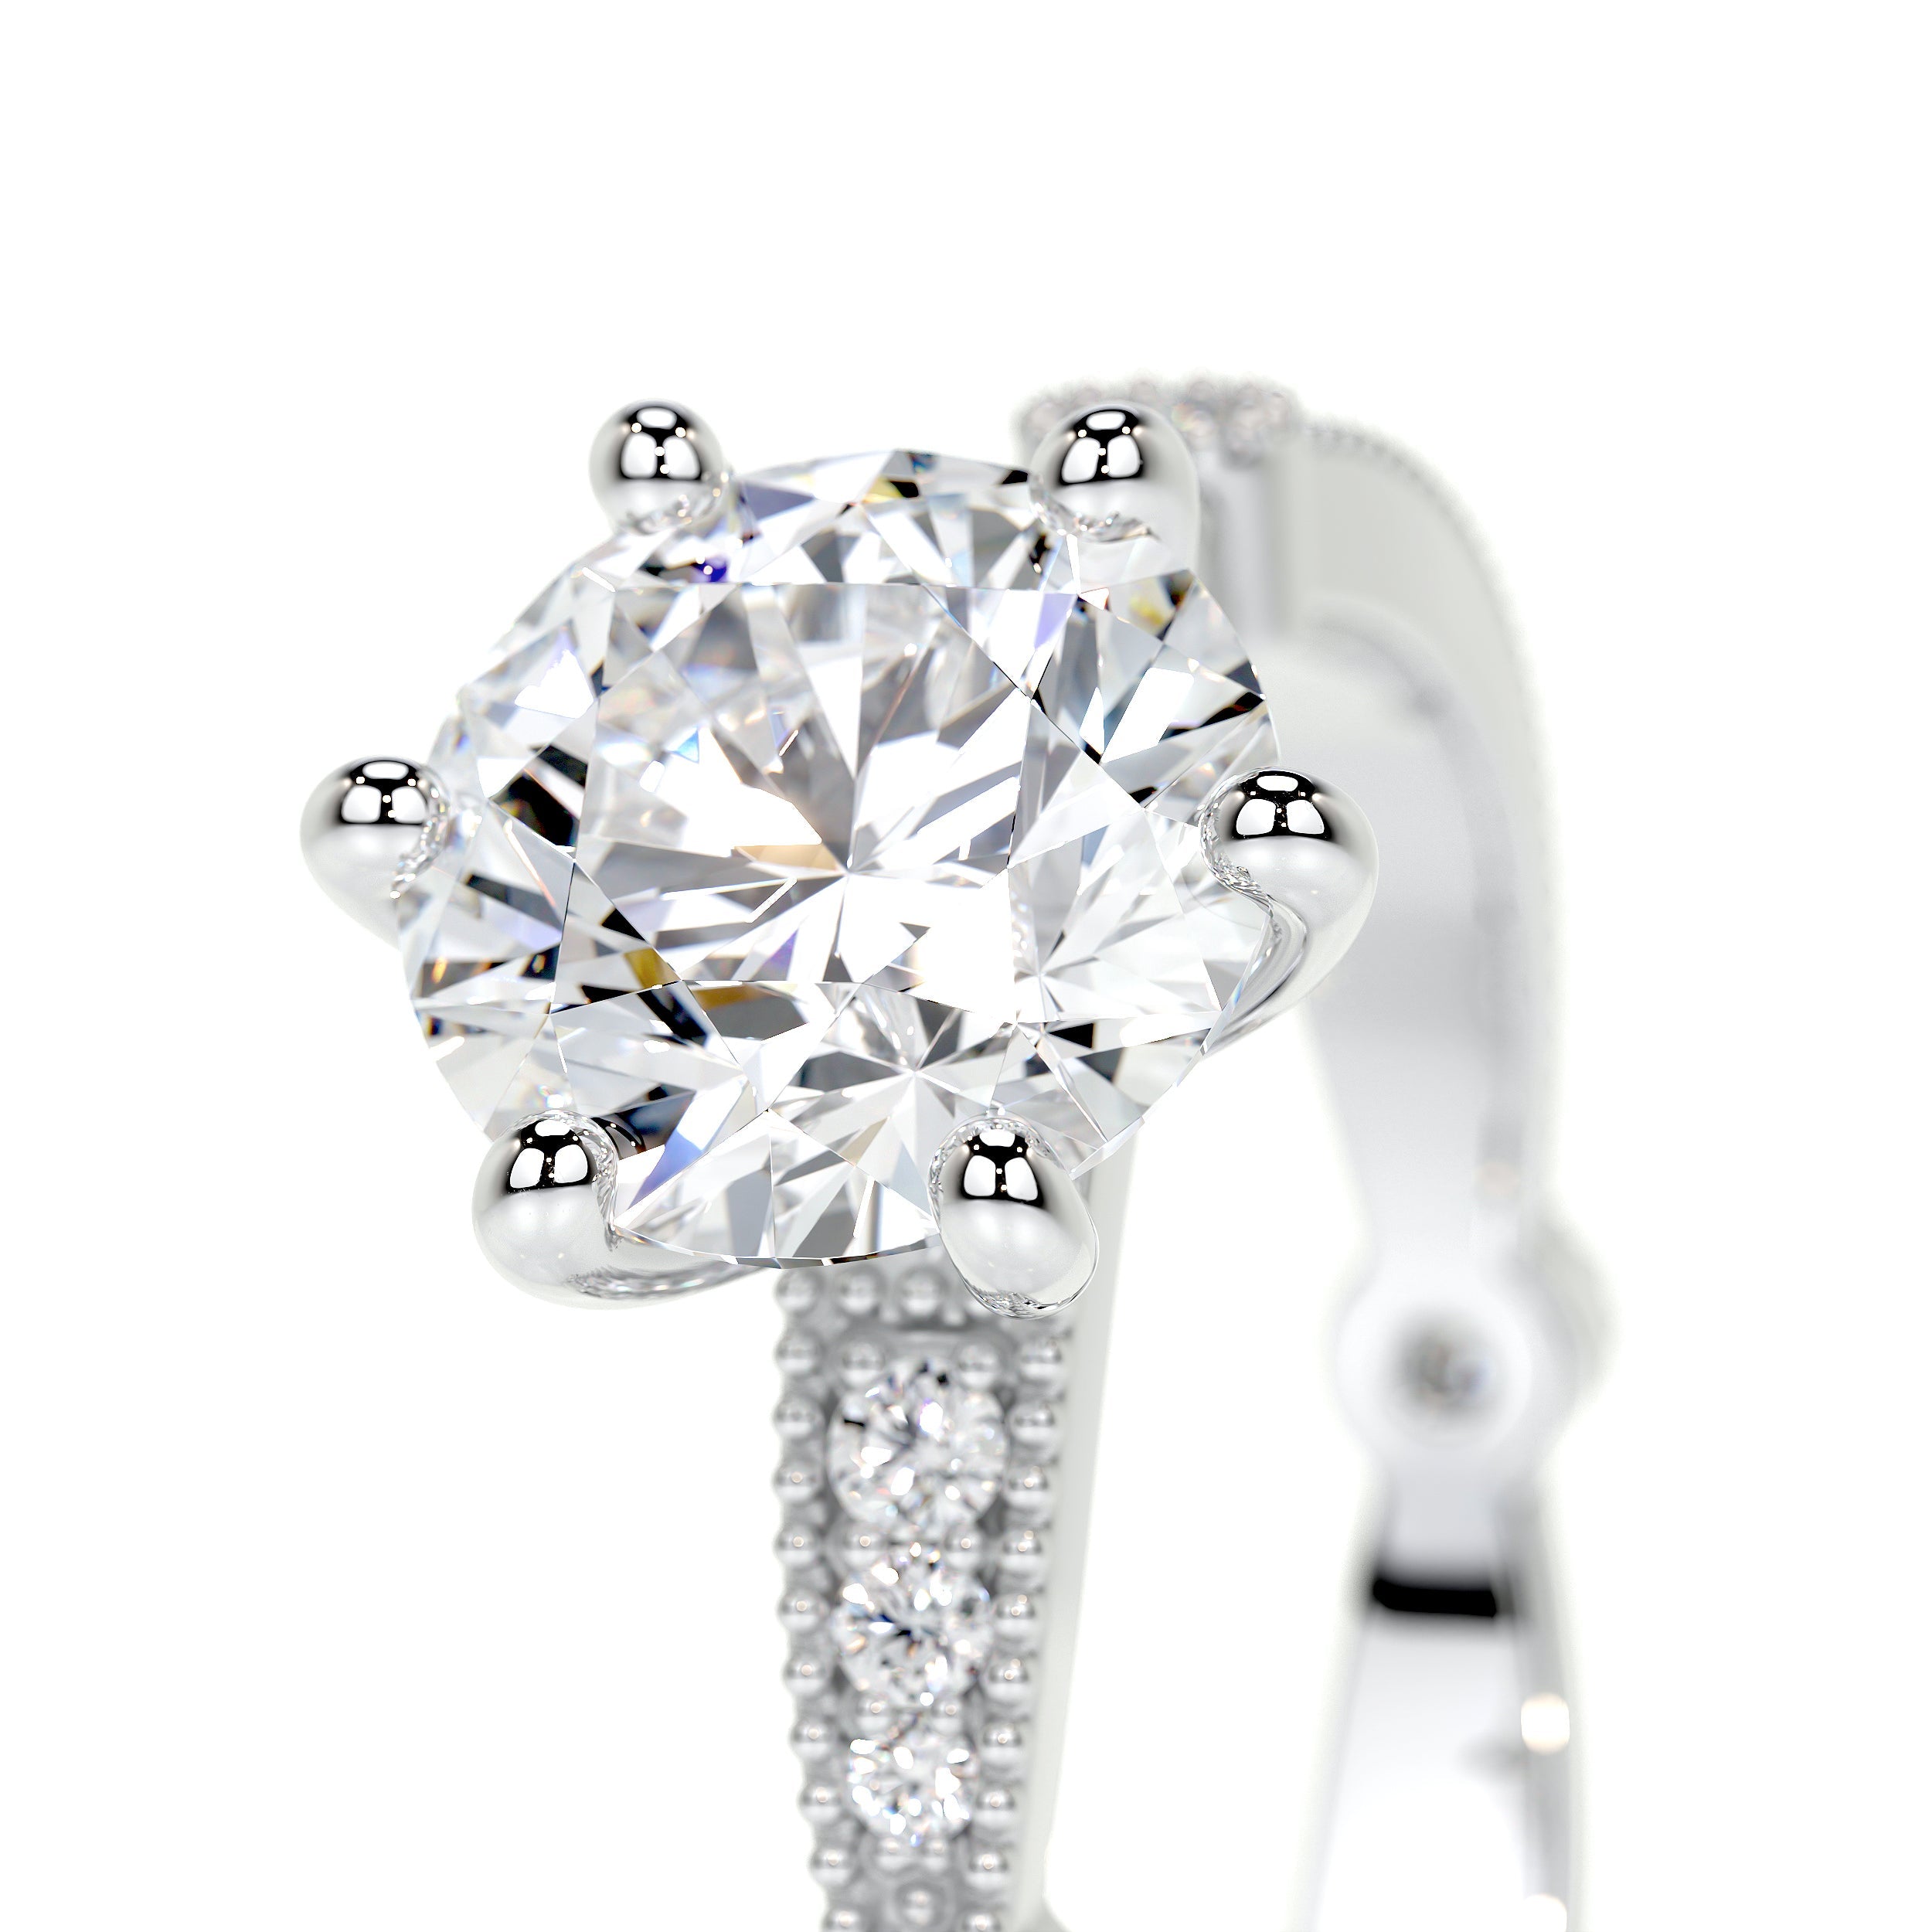 Amelia Lab Grown Diamond Ring   (2 Carat) - 18K White Gold